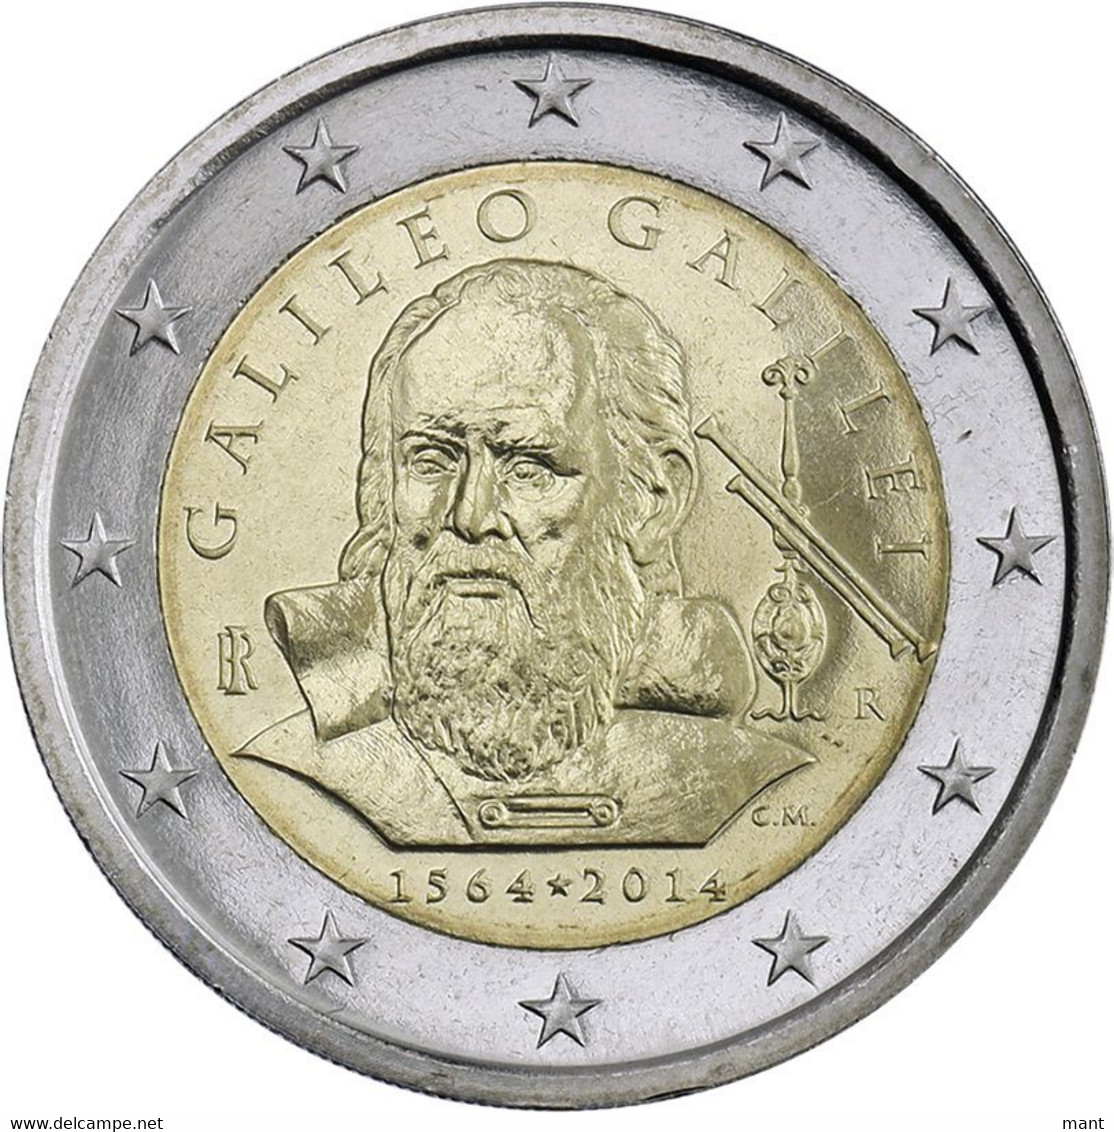 ITALIA MONETA DA 2 EURO COMMEMORATIVO GALILEO GALILEI 2014 FDC - Commemorative